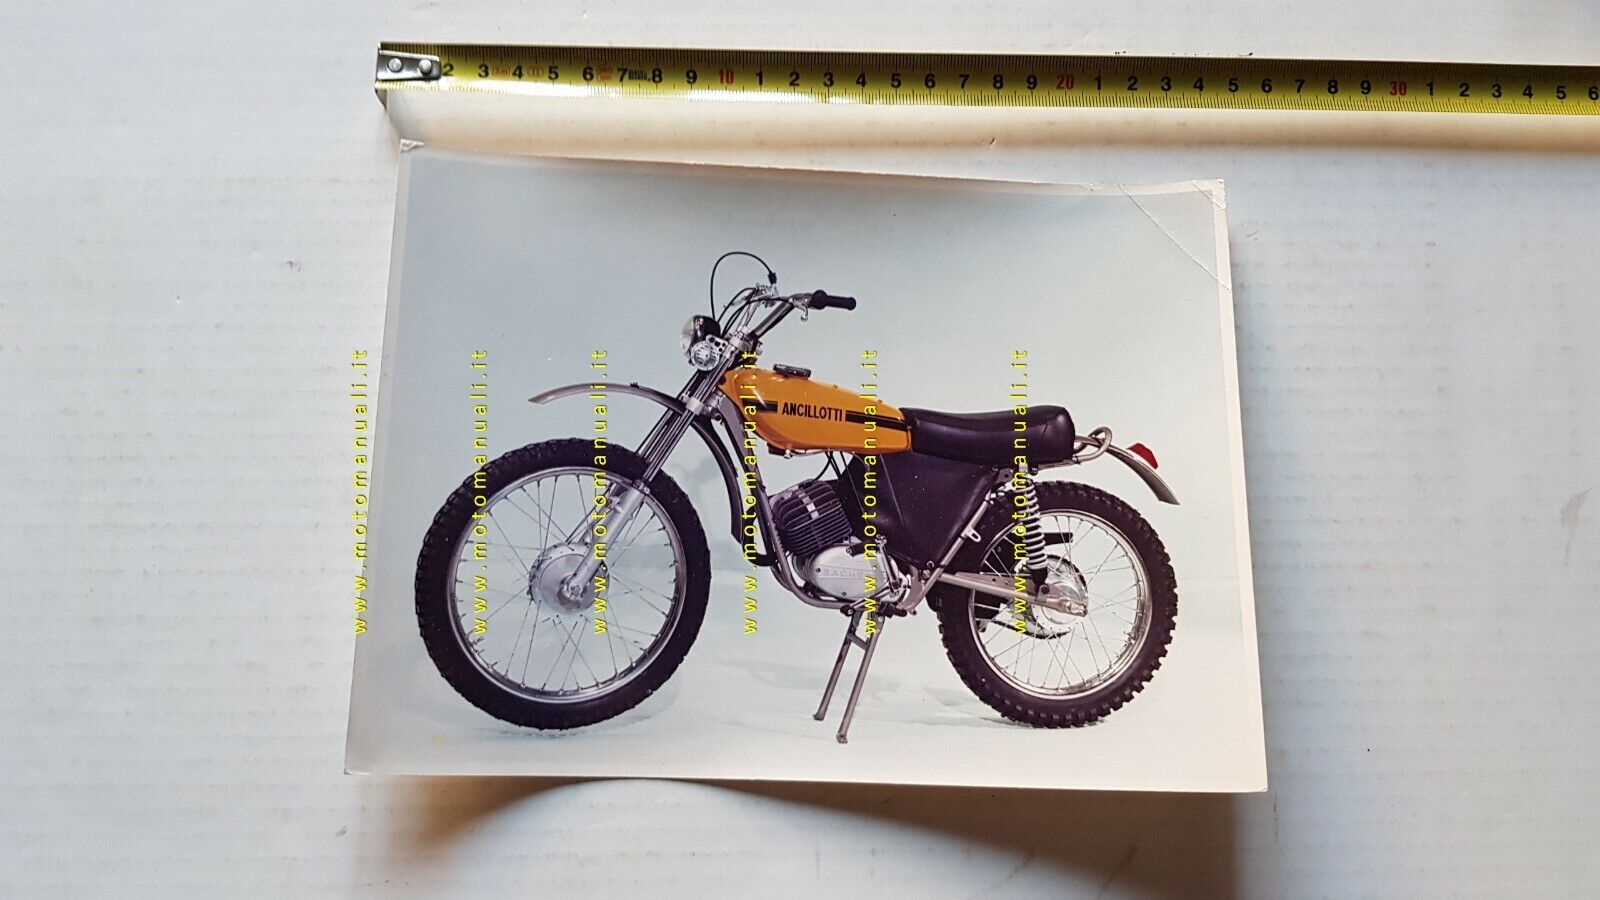 Ancillotti Scarab A 50 Regolarità Sachs 5V 1972-73 foto stampa moto no depliant 